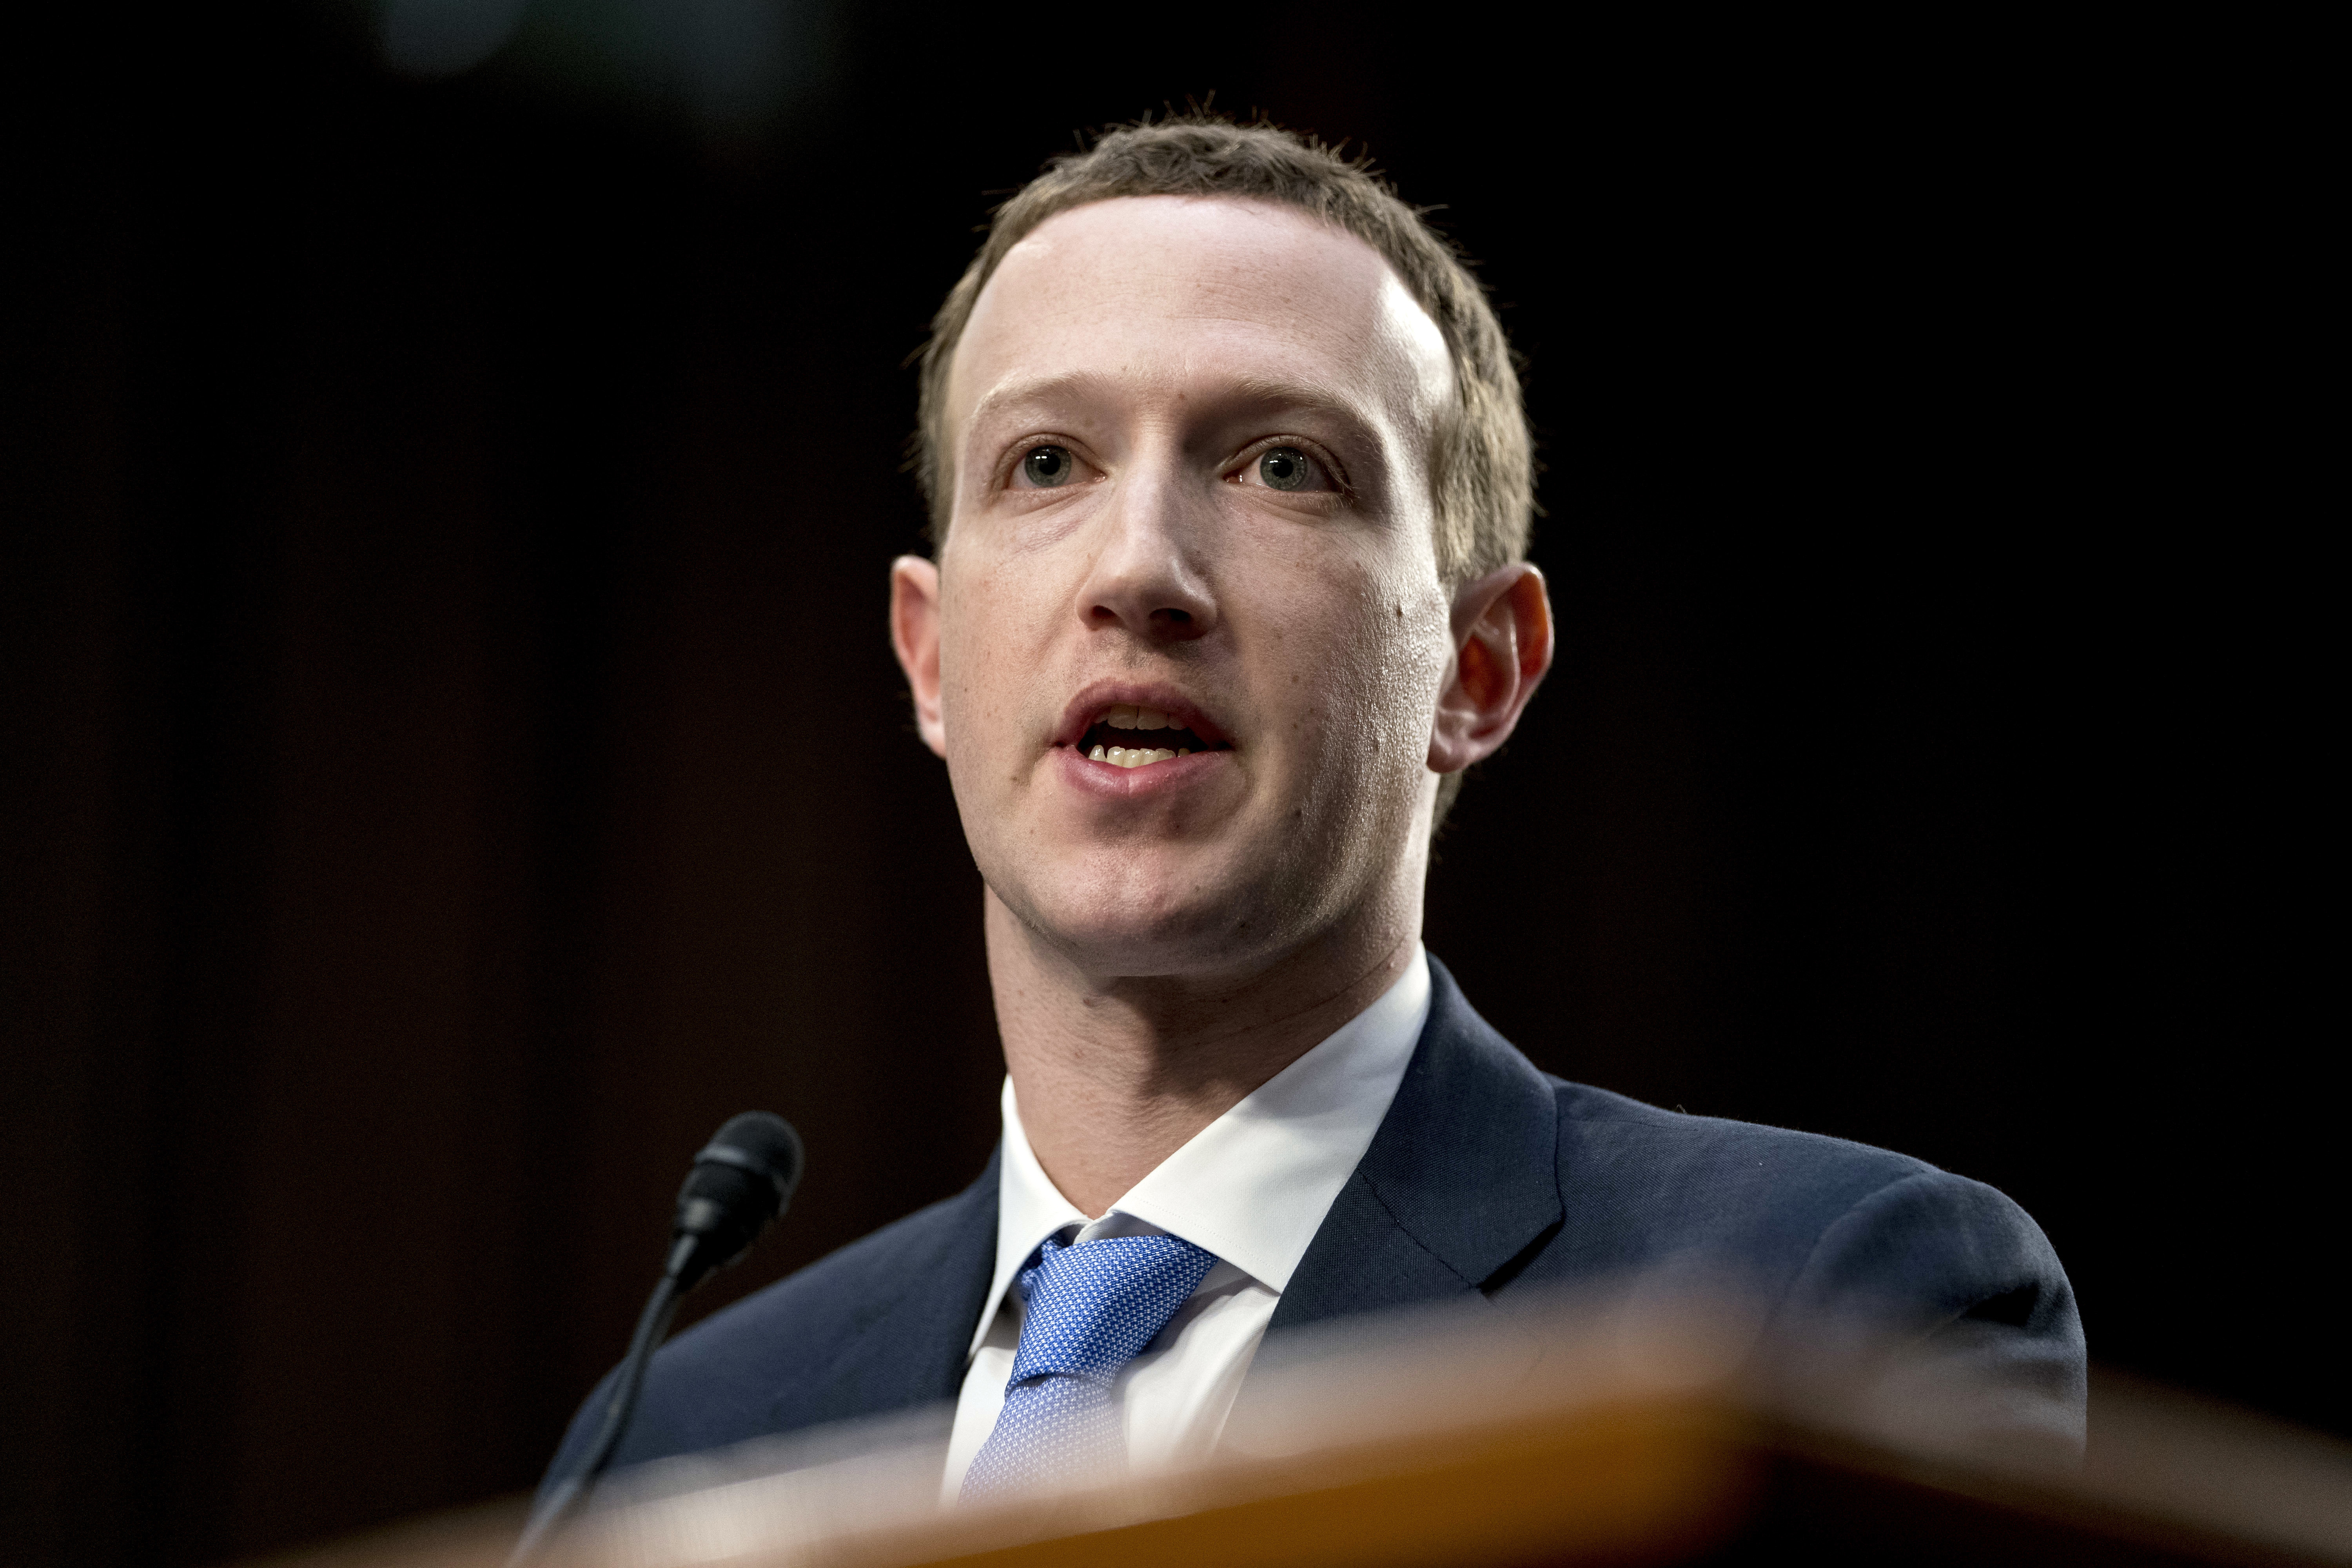 Марк Зукърбърг беше изслушан пред Сената на САЩ заради изтичането на данни от Фейсбук